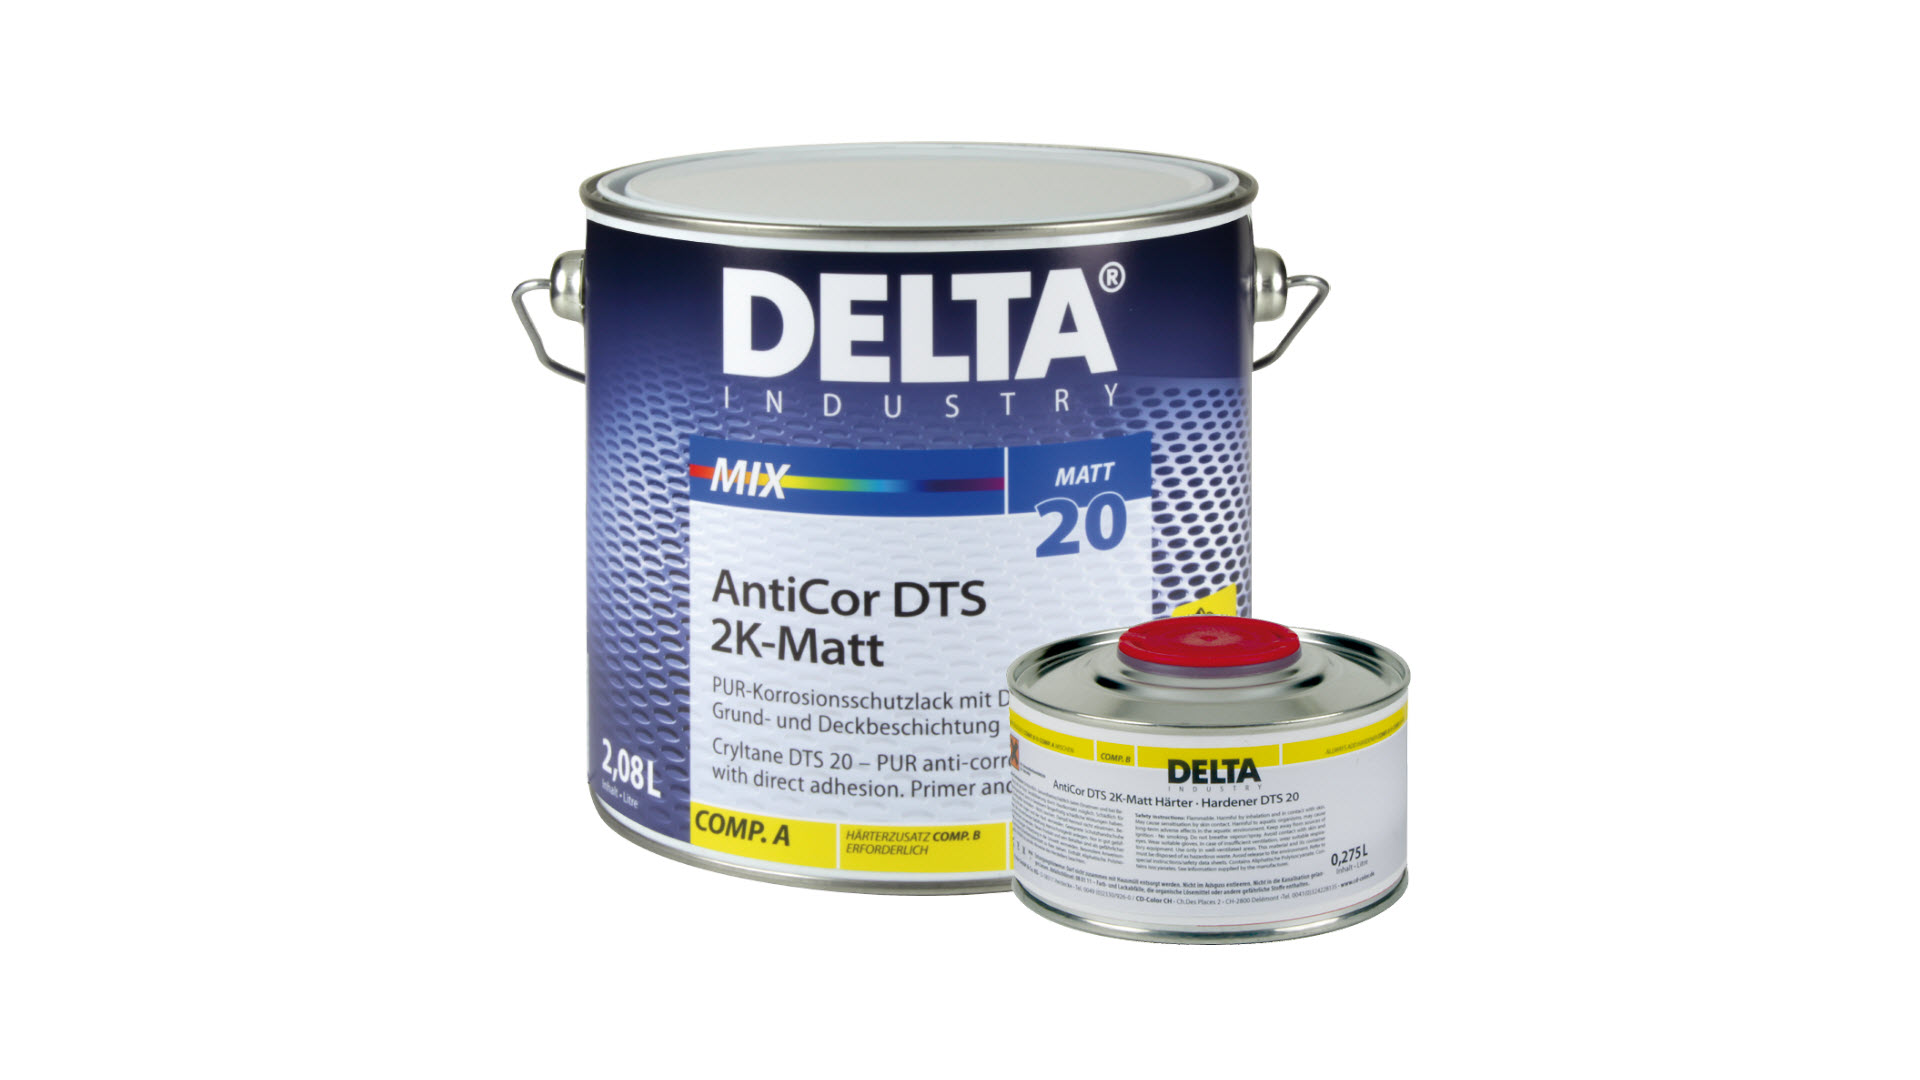 delta-anticor-dts-2k-matt-20